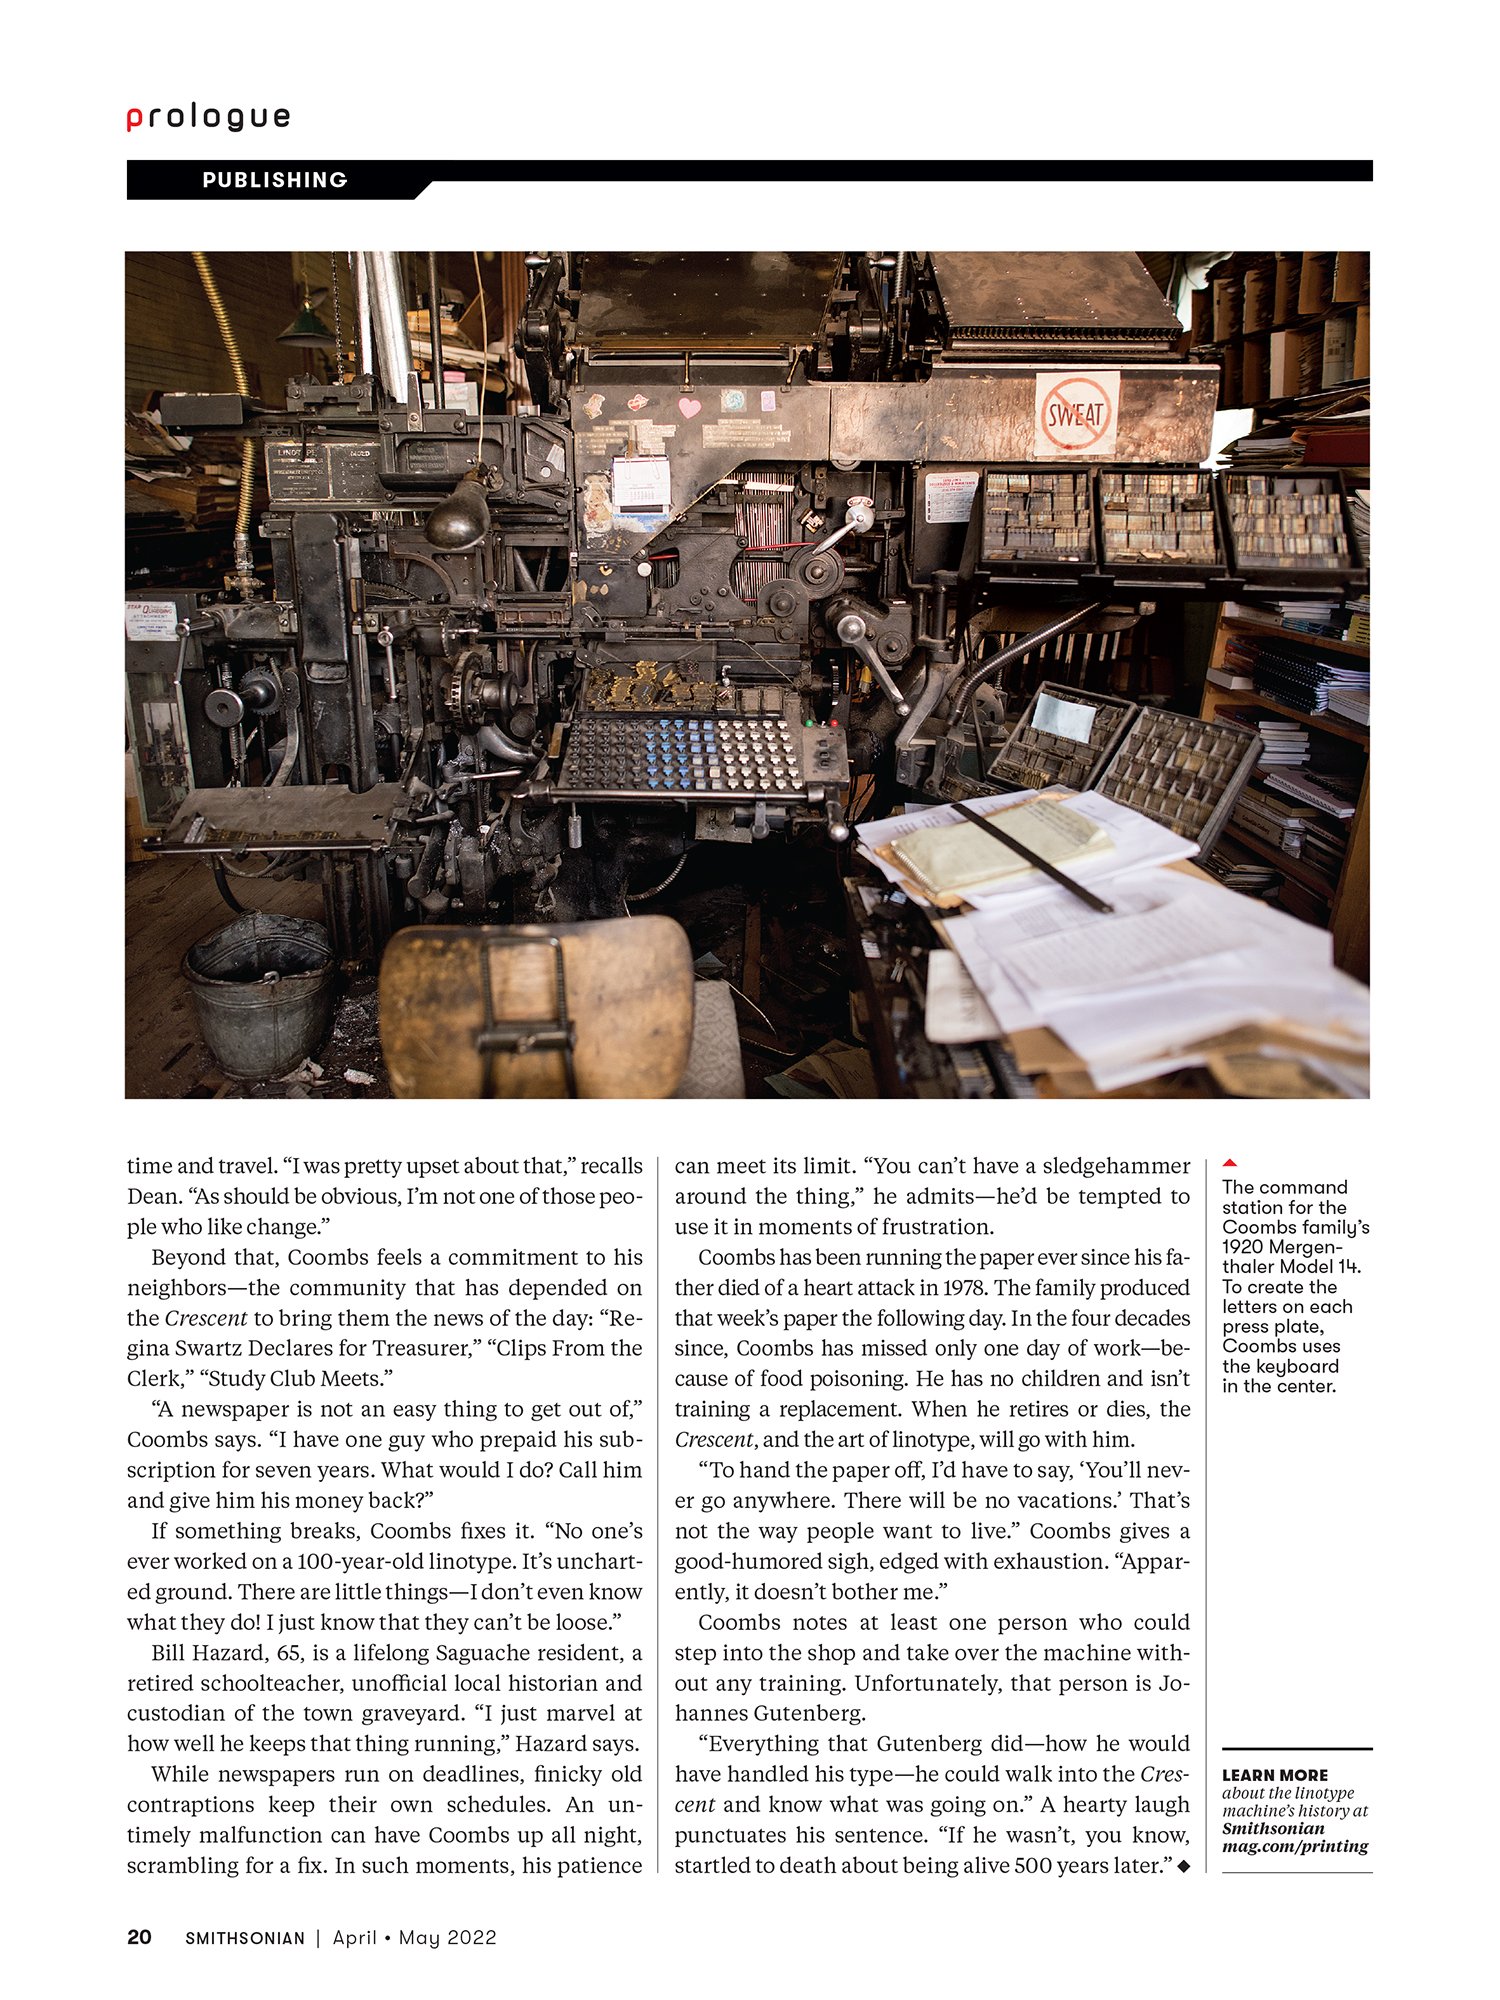 Linotype Machine 